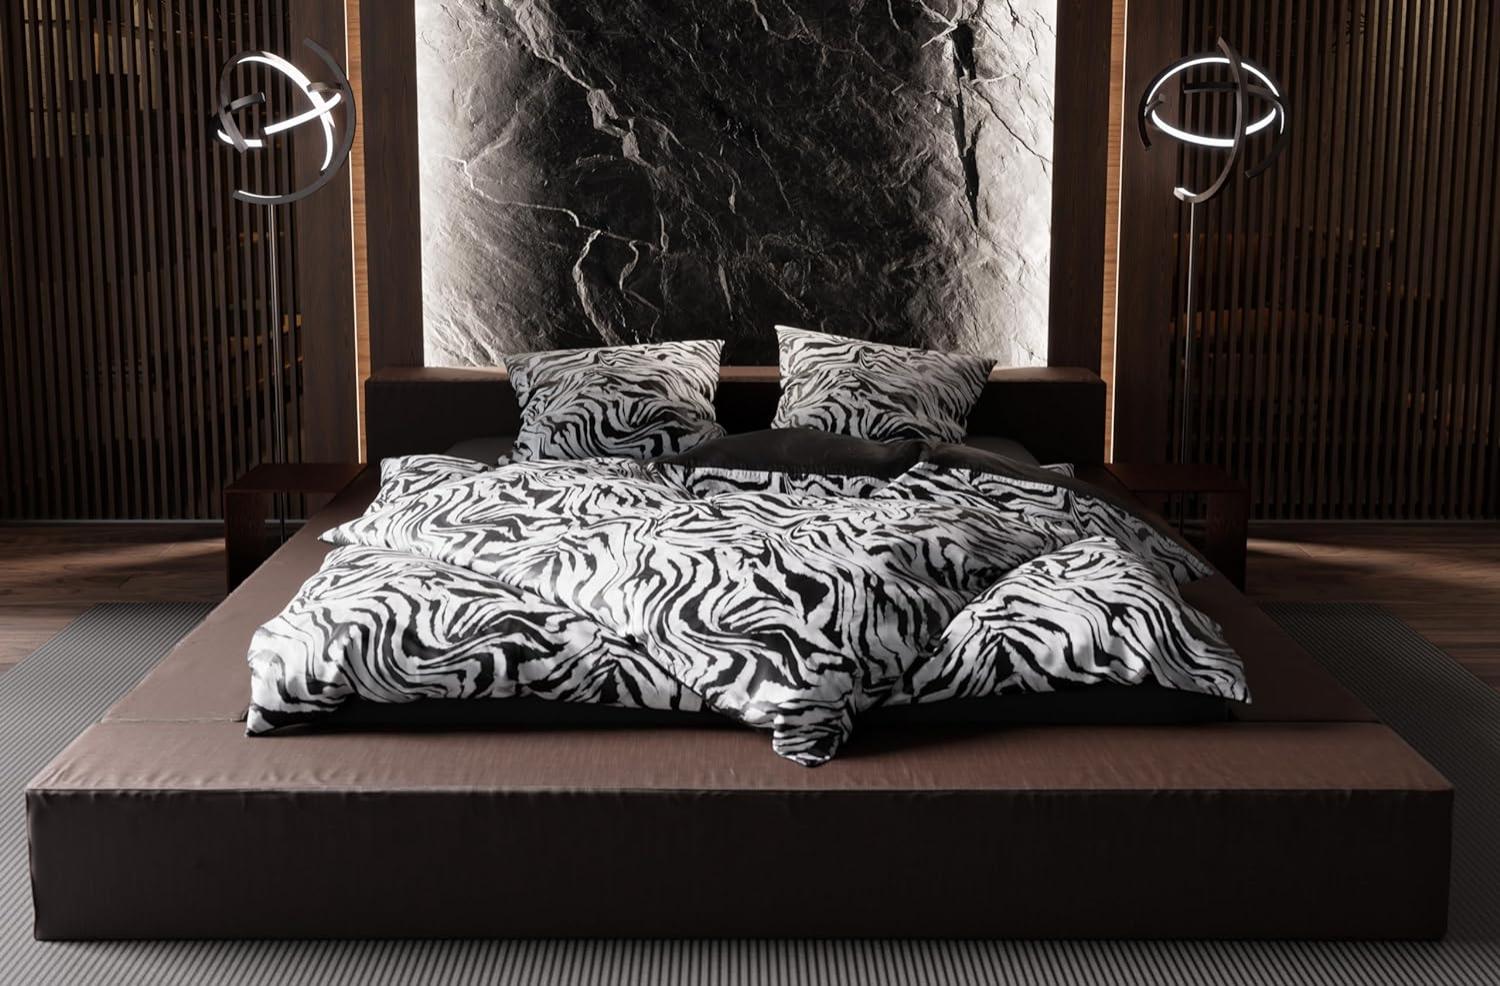 Moderne Mako Satin Wende Bettwäsche Zebra Muster schwarz weiß 155x220 + 80x80 Bild 1